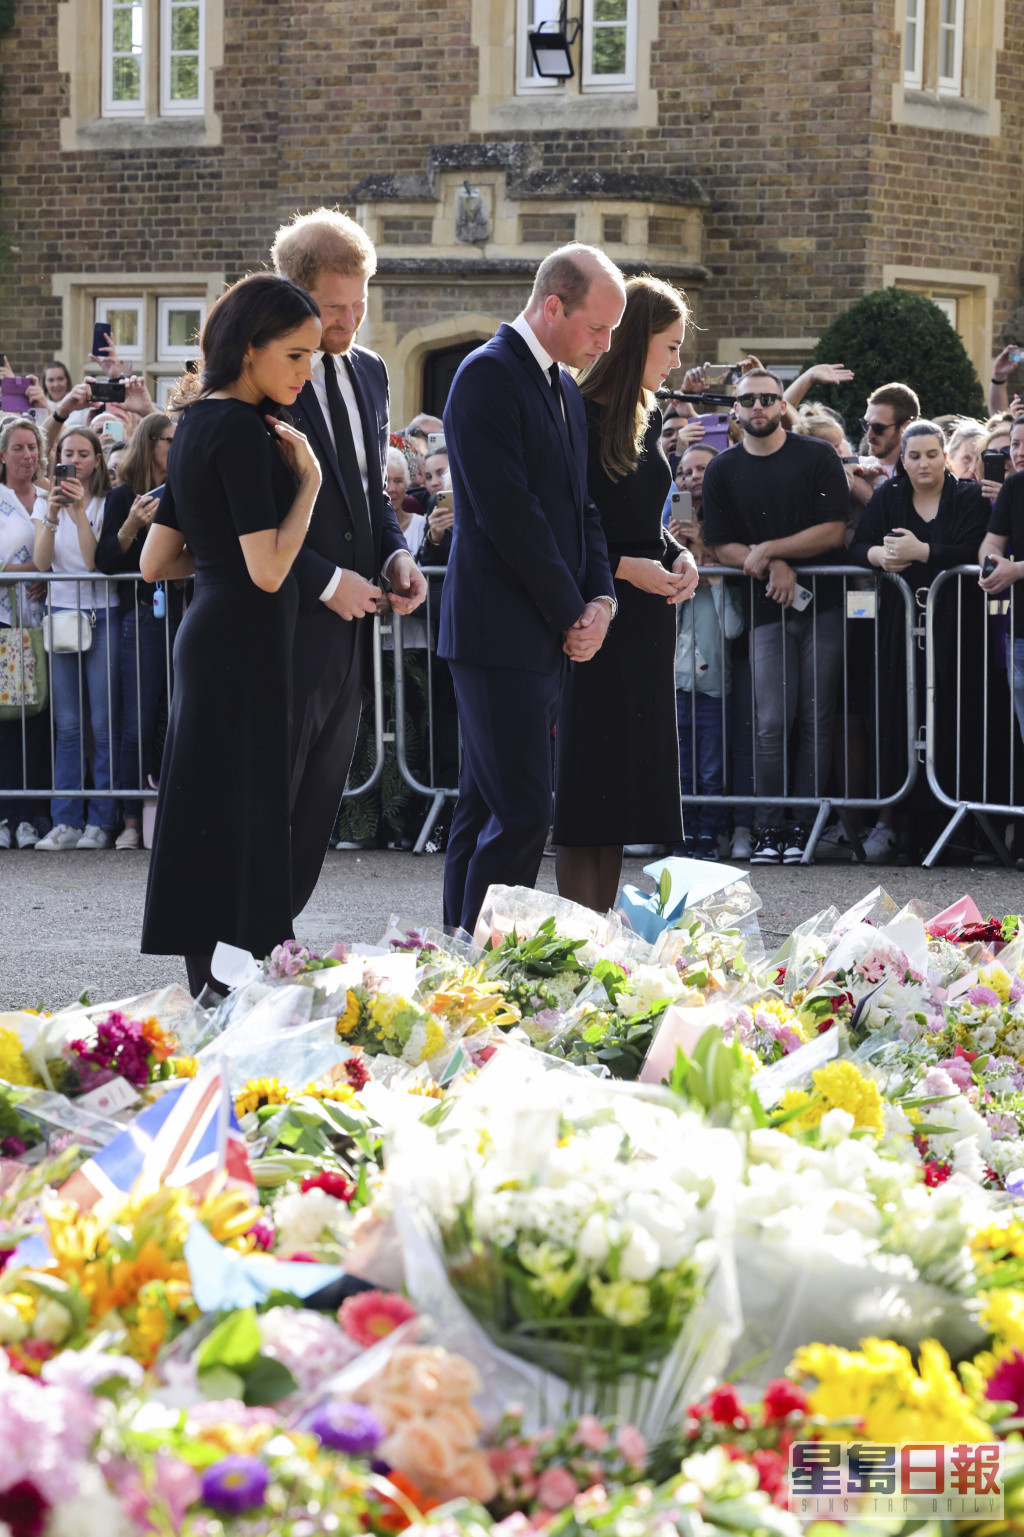 4人用心看民众摆放在温莎堡闸外悼念女皇的鲜花及留言。AP